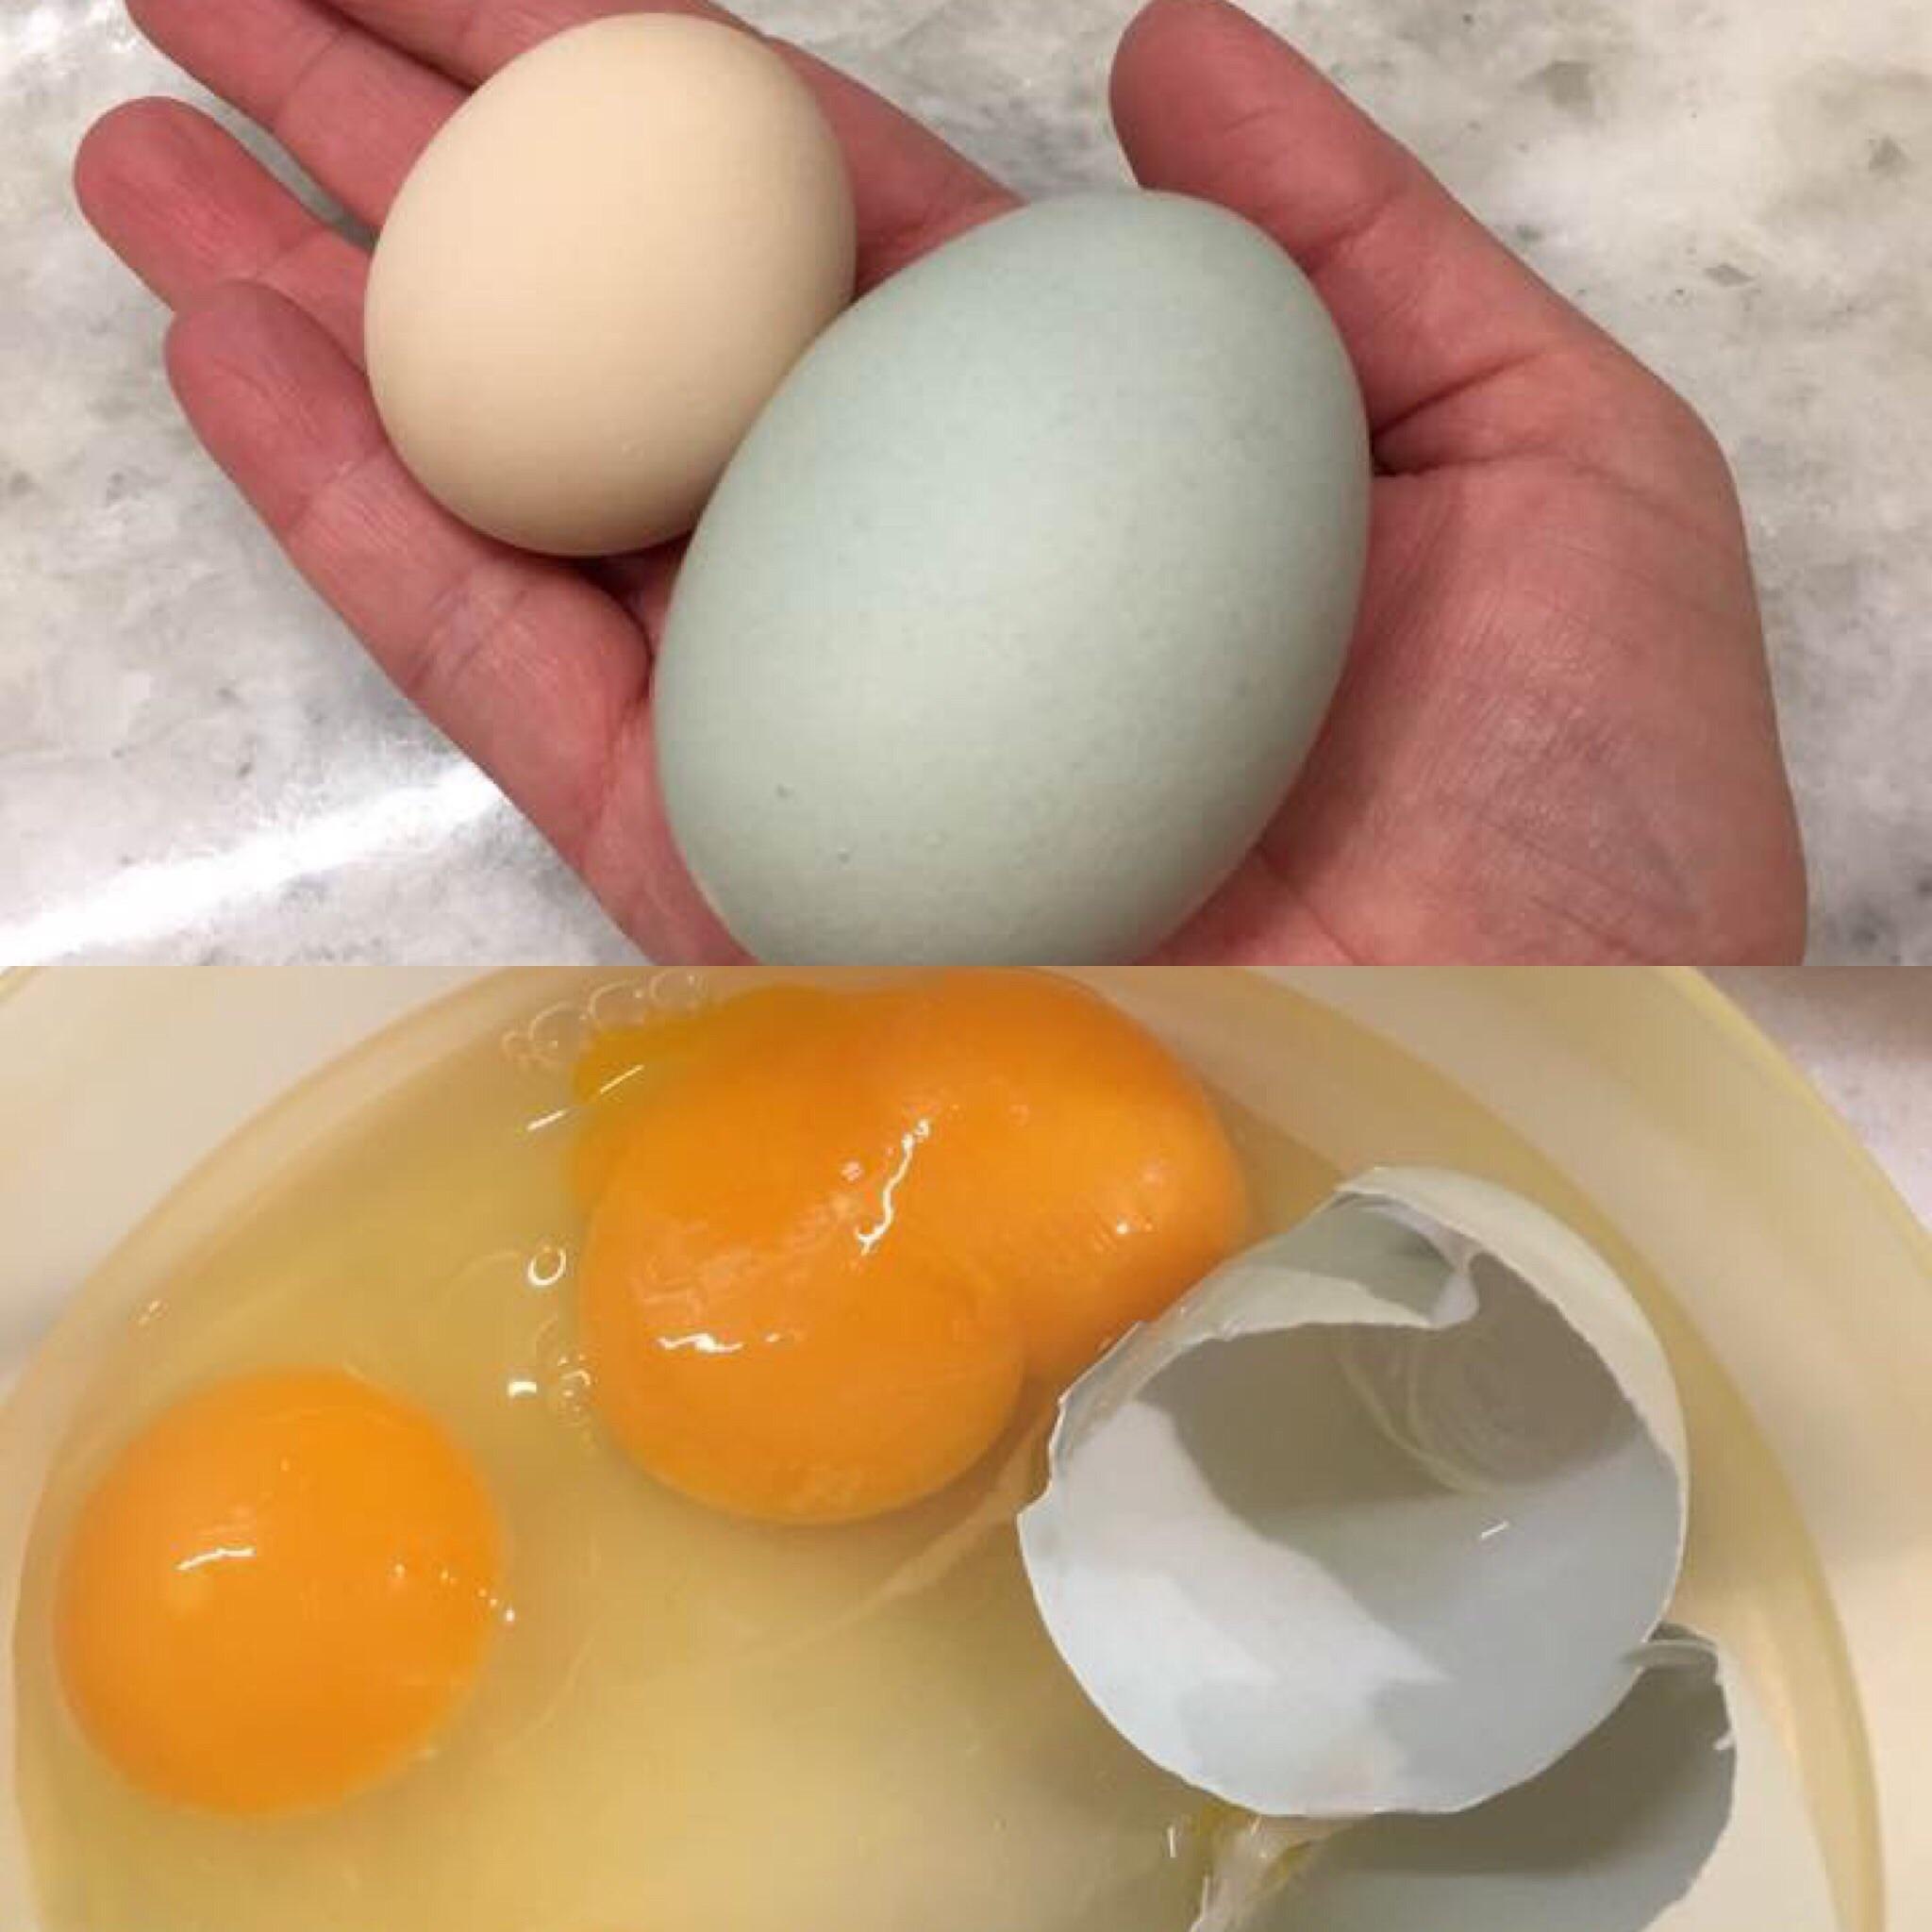 Самое сильное яйцо